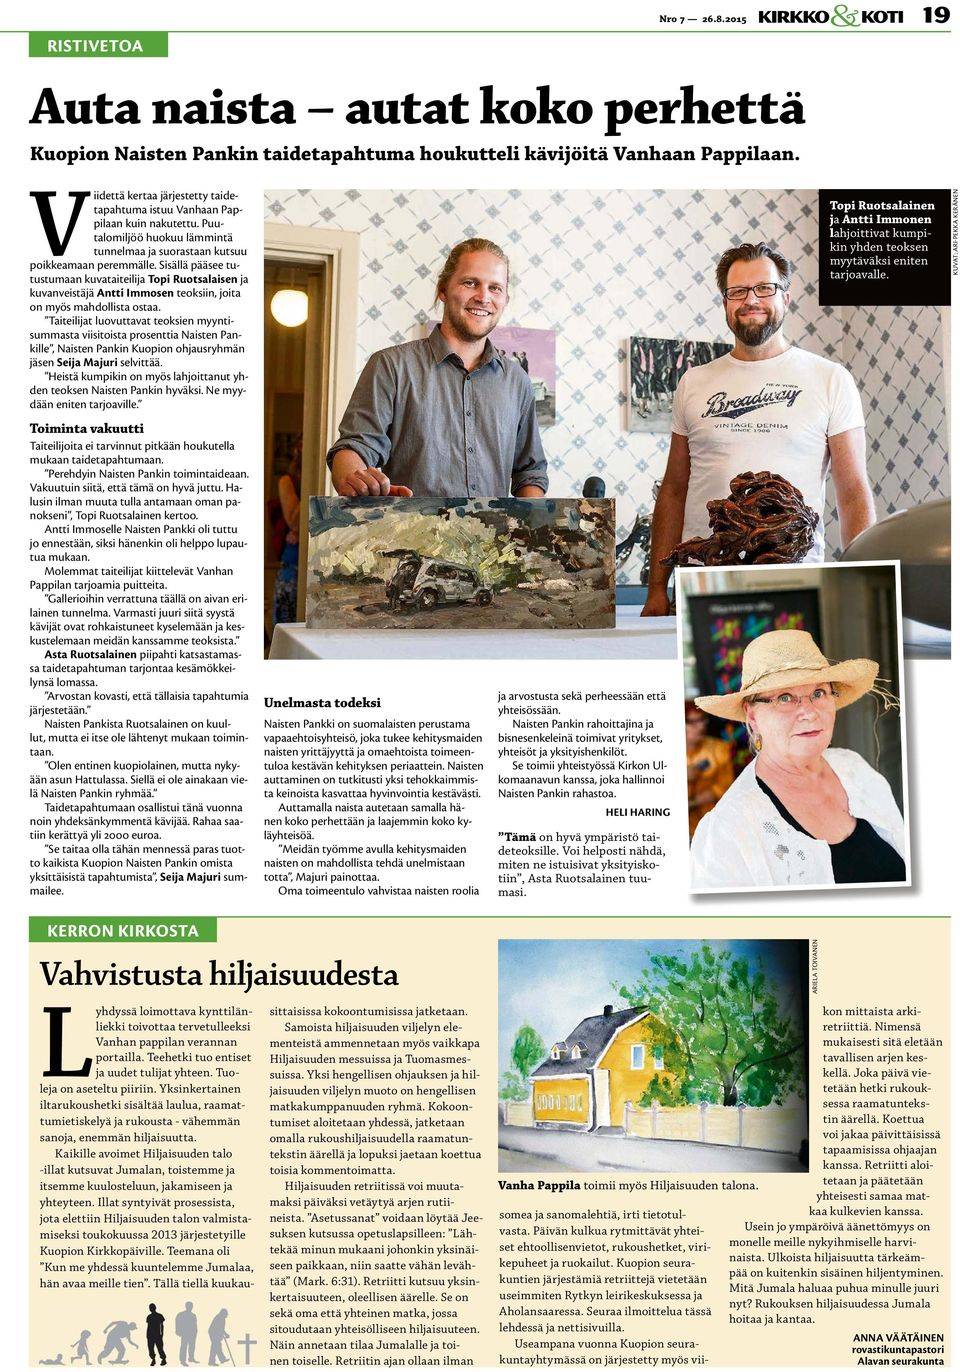 Sisällä pääsee tutustumaan kuvataiteilija Topi Ruotsalaisen ja kuvanveistäjä Antti Immosen teoksiin, joita on myös mahdollista ostaa.